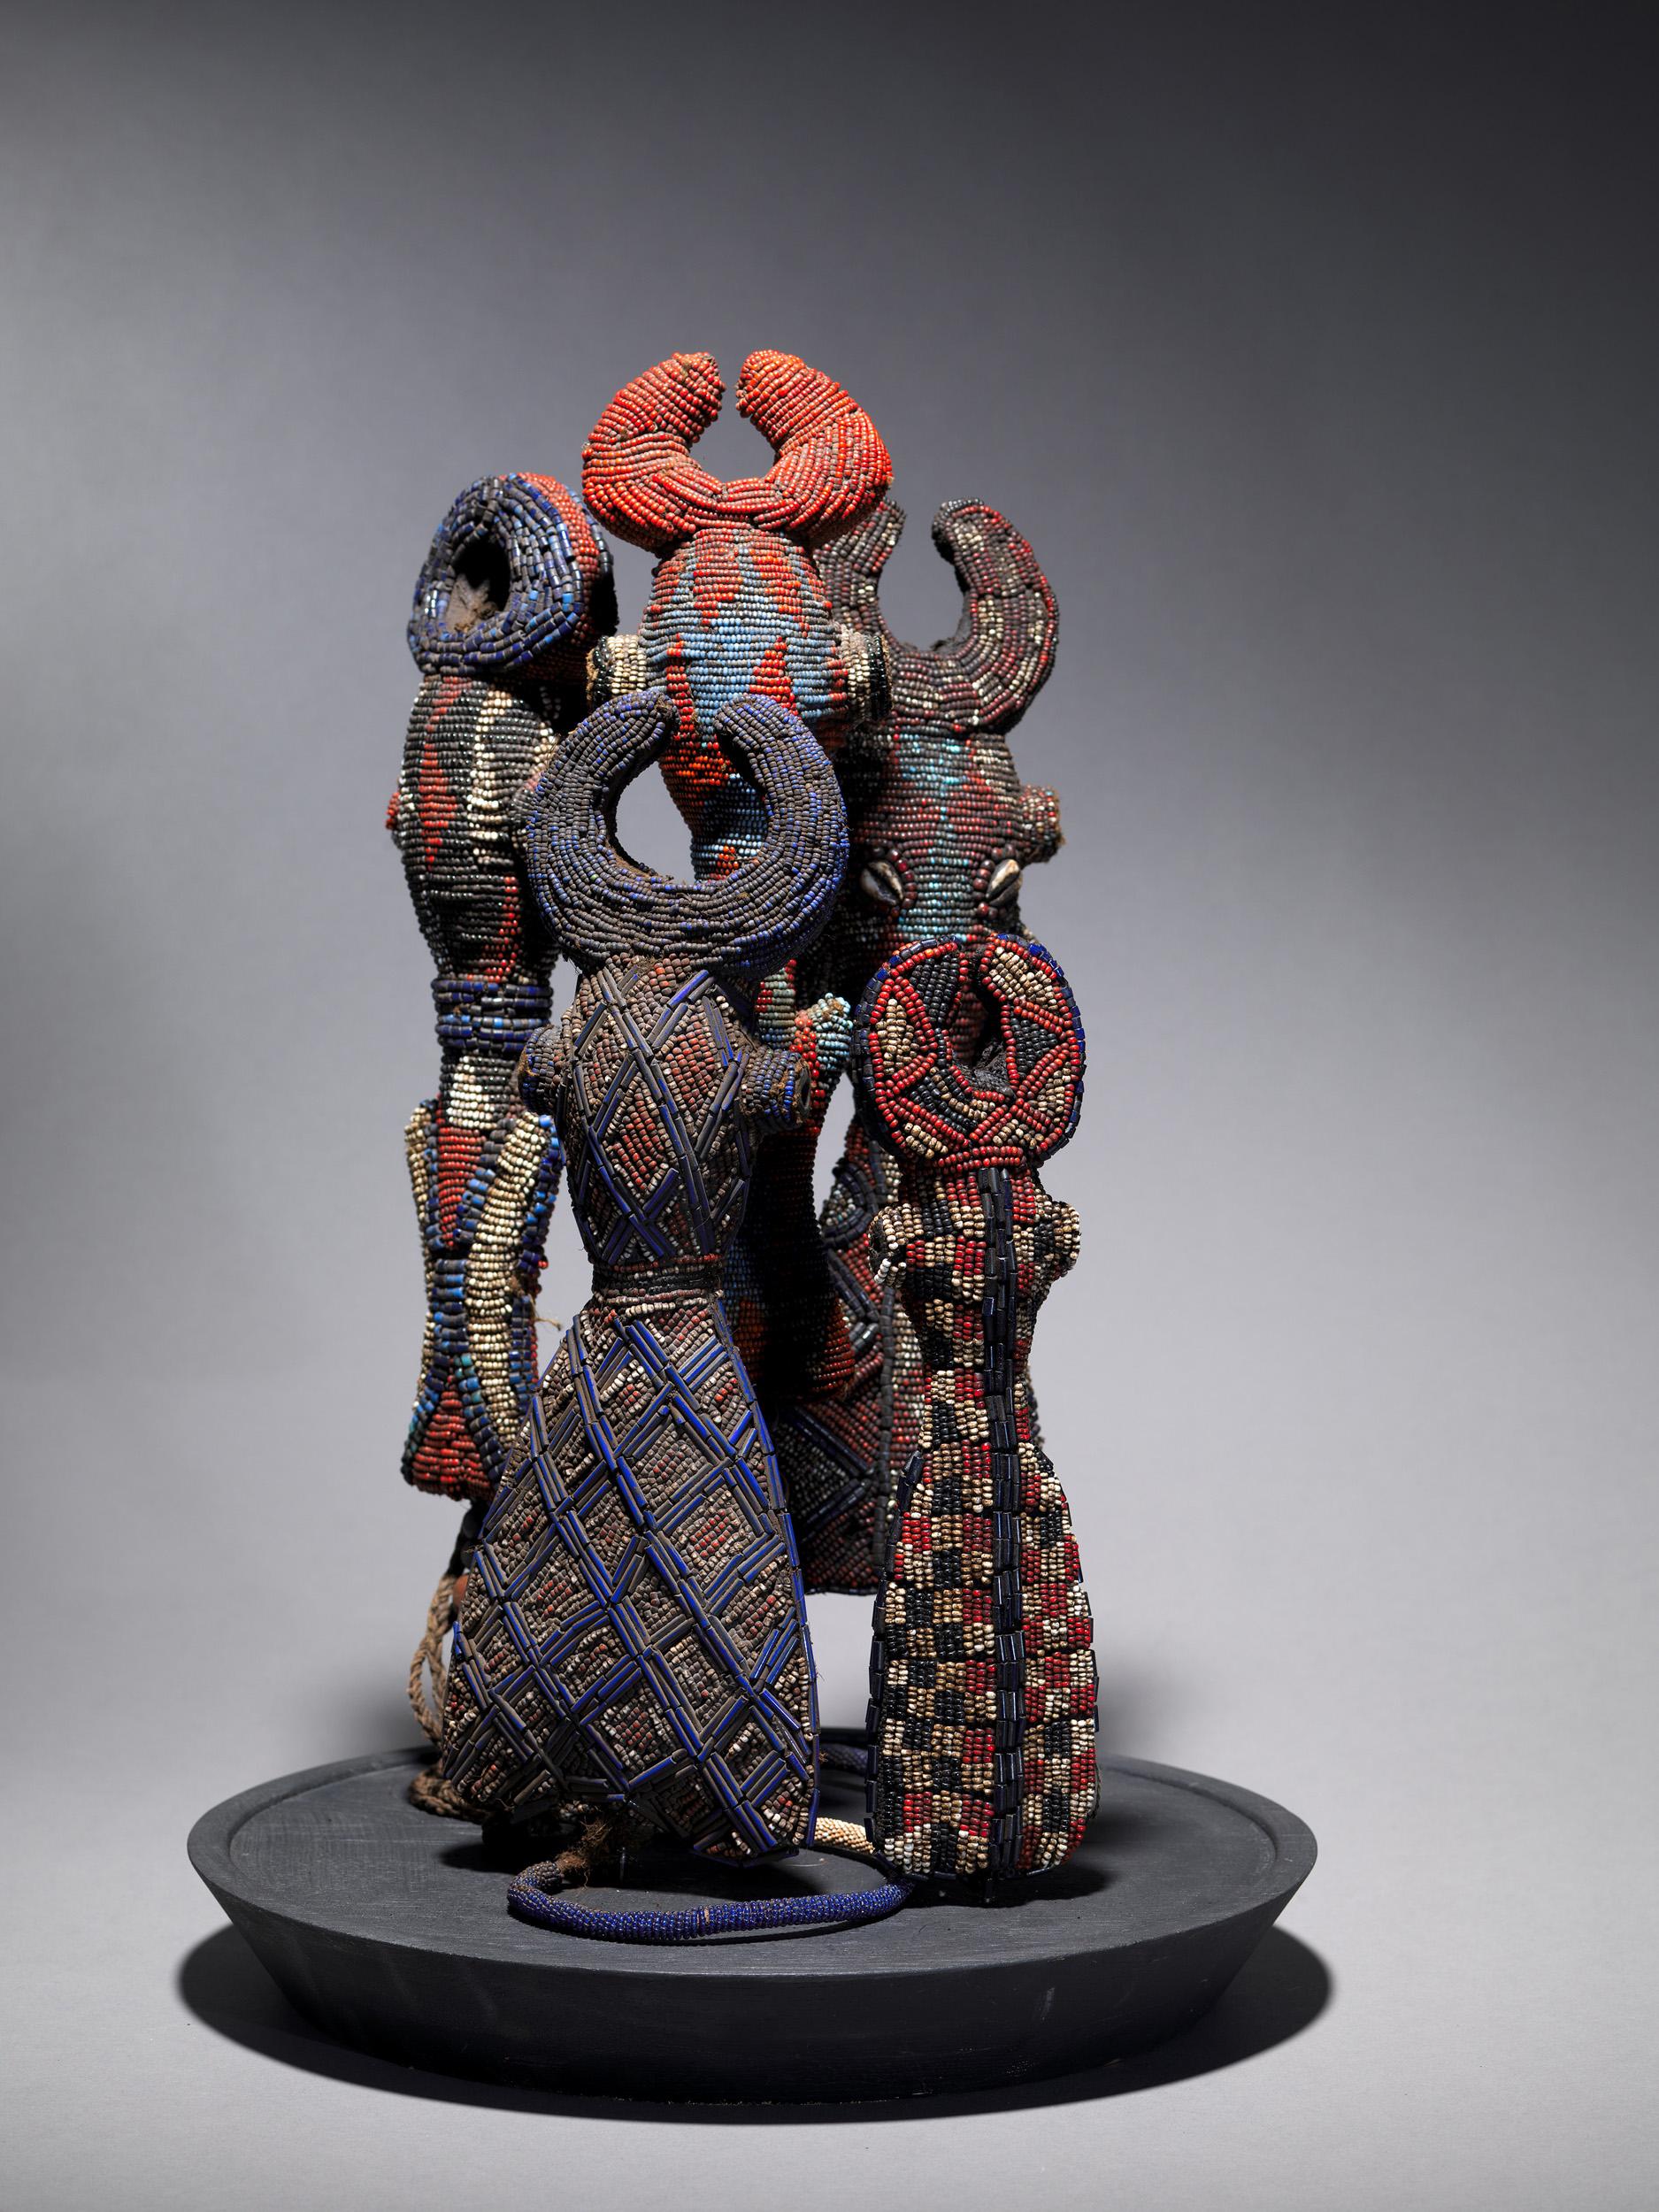 Fünf zeremonielle Perlenflöten oder Pfeifen aus dem Kameruner Grasland. Es gibt sie in verschiedenen geometrischen Formen, die die Gestalt einer ausgehöhlten, stilisierten Figur annehmen, die menschliche und tierische Merkmale vereint. Die meisten